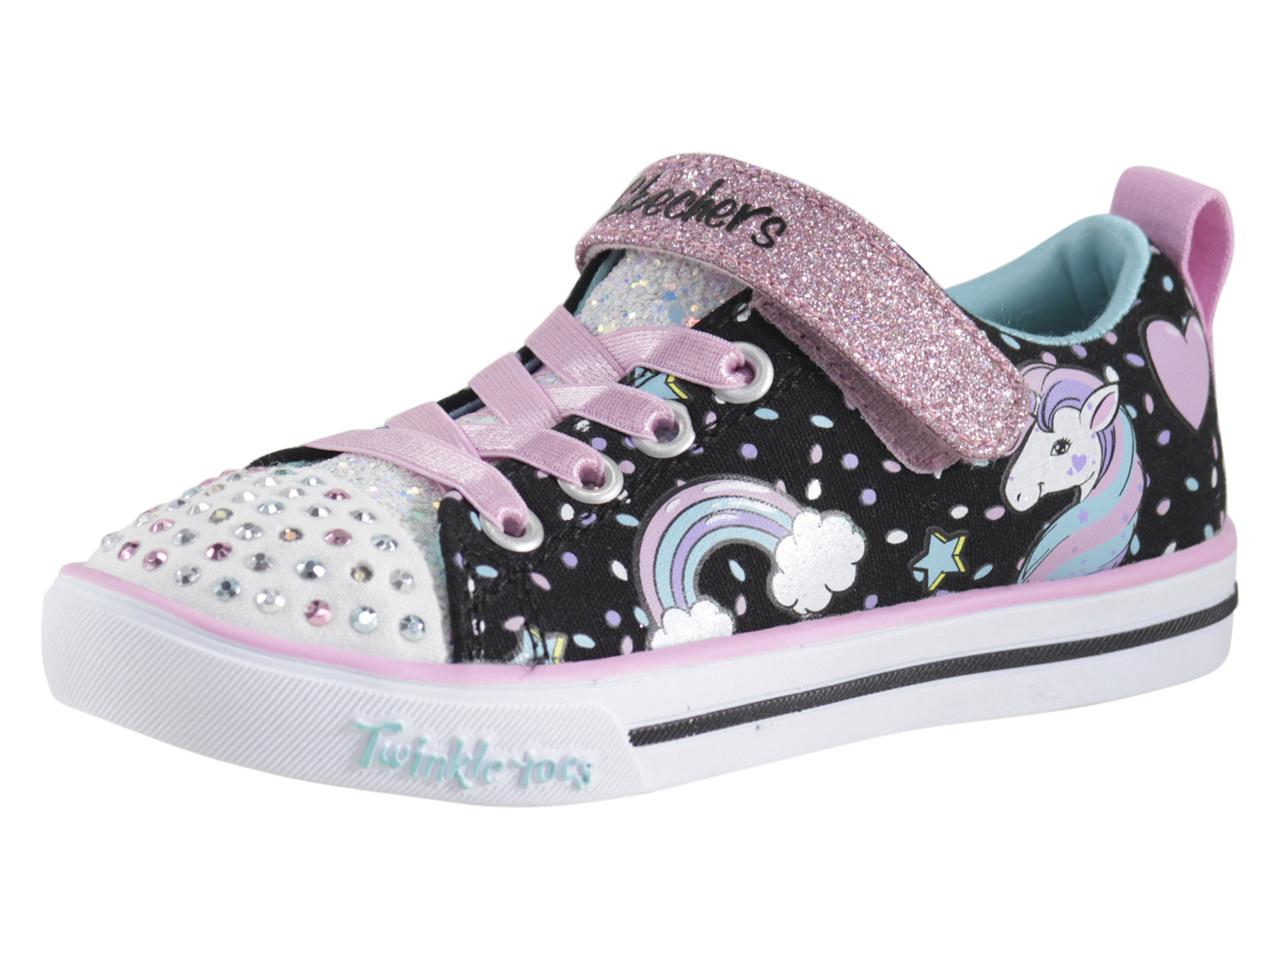 Skechers Toddler/Little Girl's S-Lights Unicorn Craze Light Up Sneakers ...